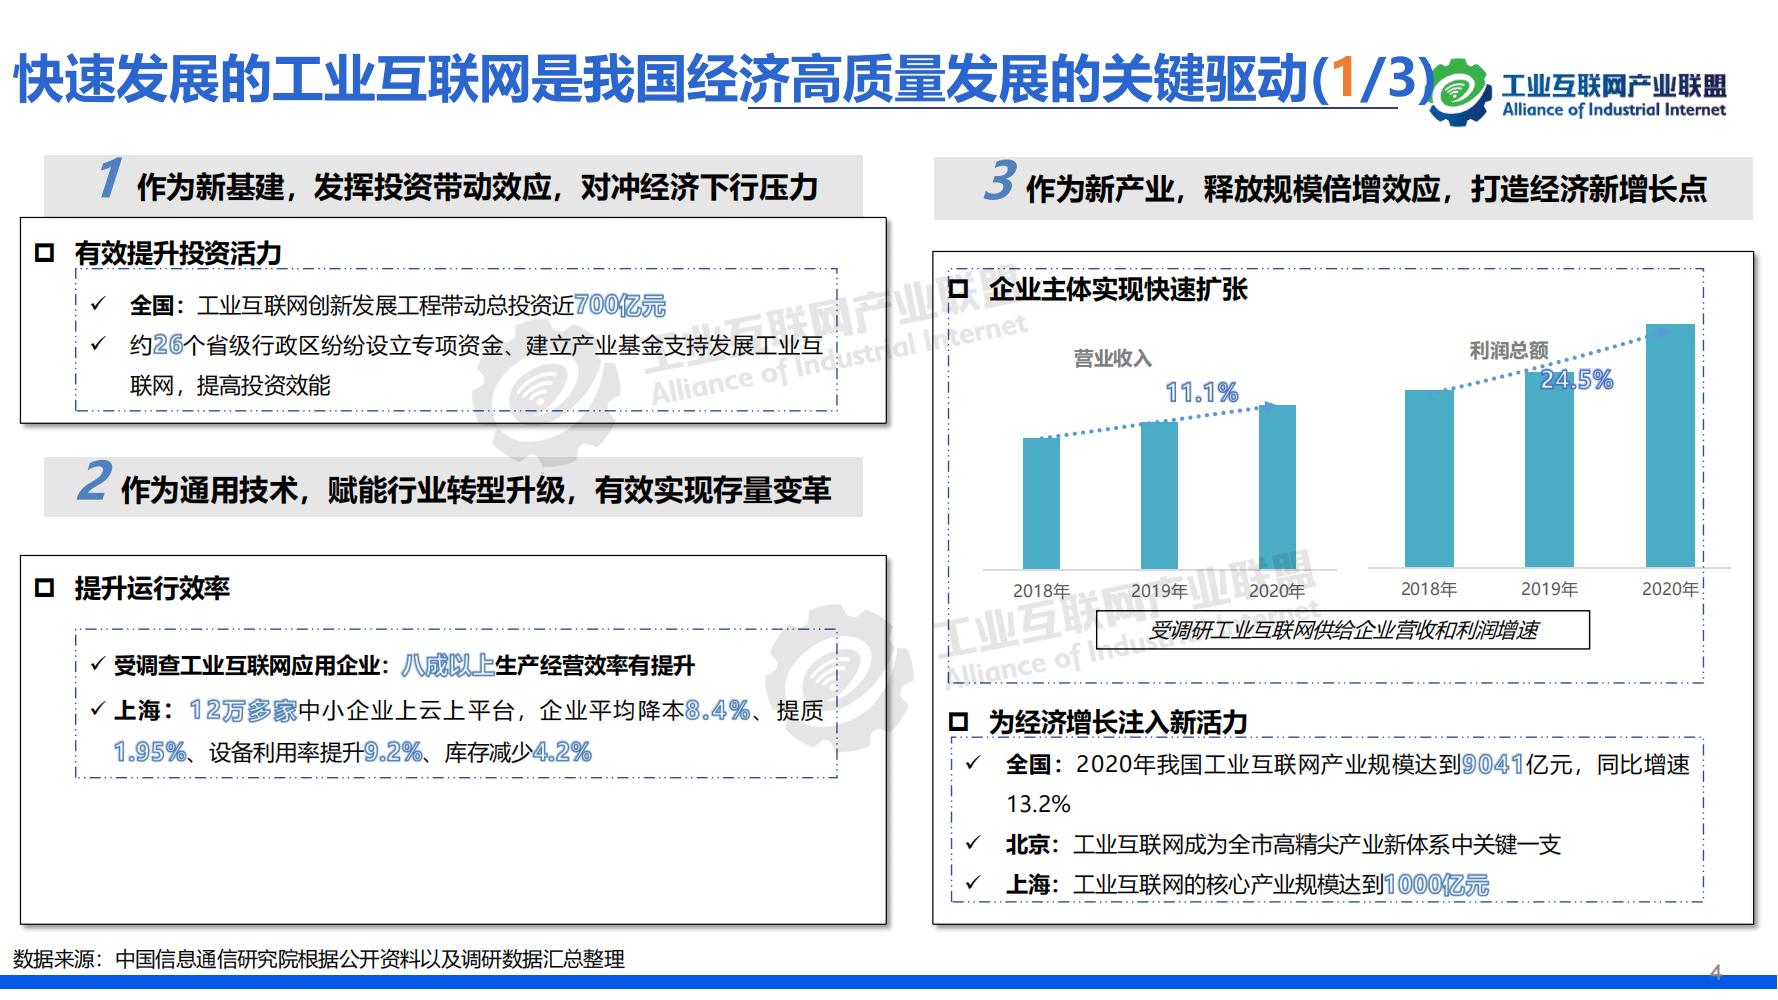 1-中国工业互联网发展成效评估报告-水印_07.jpg